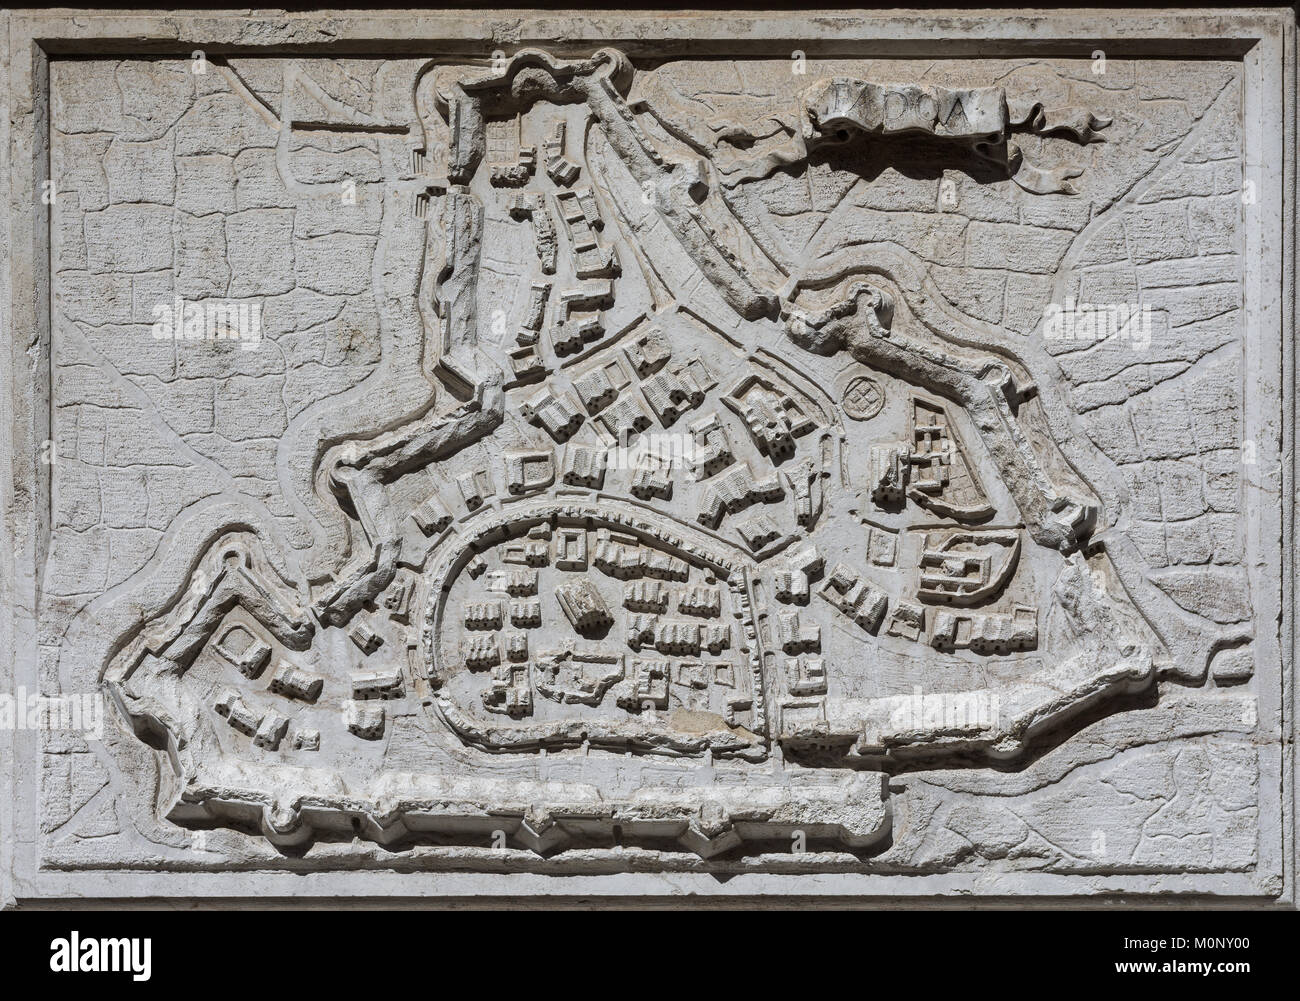 Carte ancienne de Padoue ville avec de vieux murs en pierre, d'un allégement fiscal sur l'église Santa Maria del Giglio à Venise, a terminé au 17e siècle Banque D'Images